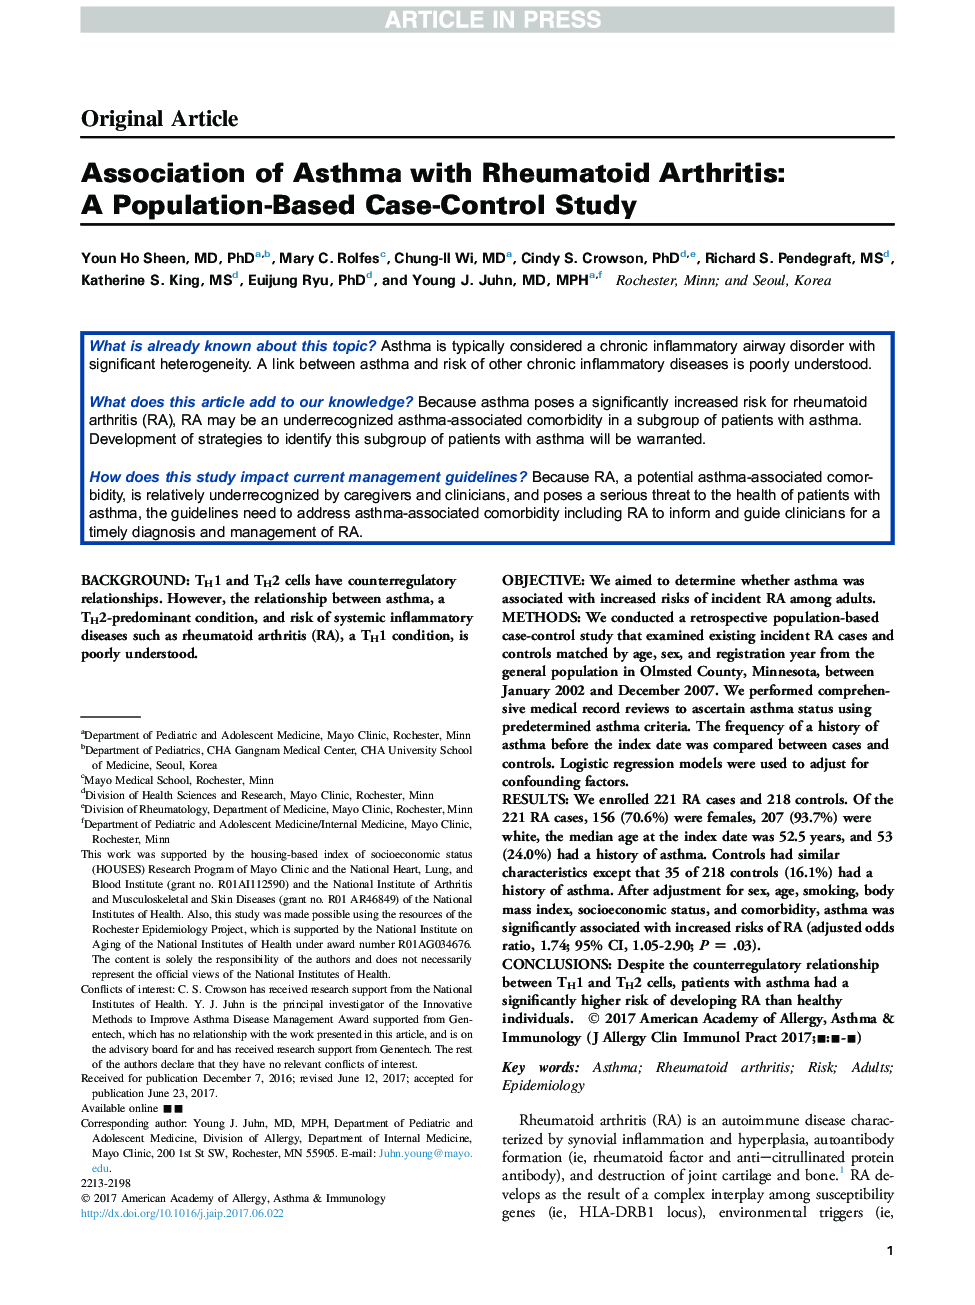 انجمن آسم با آرتریت روماتوئید: یک مطالعه مورد شاهدی مبتنی بر جمعیت 